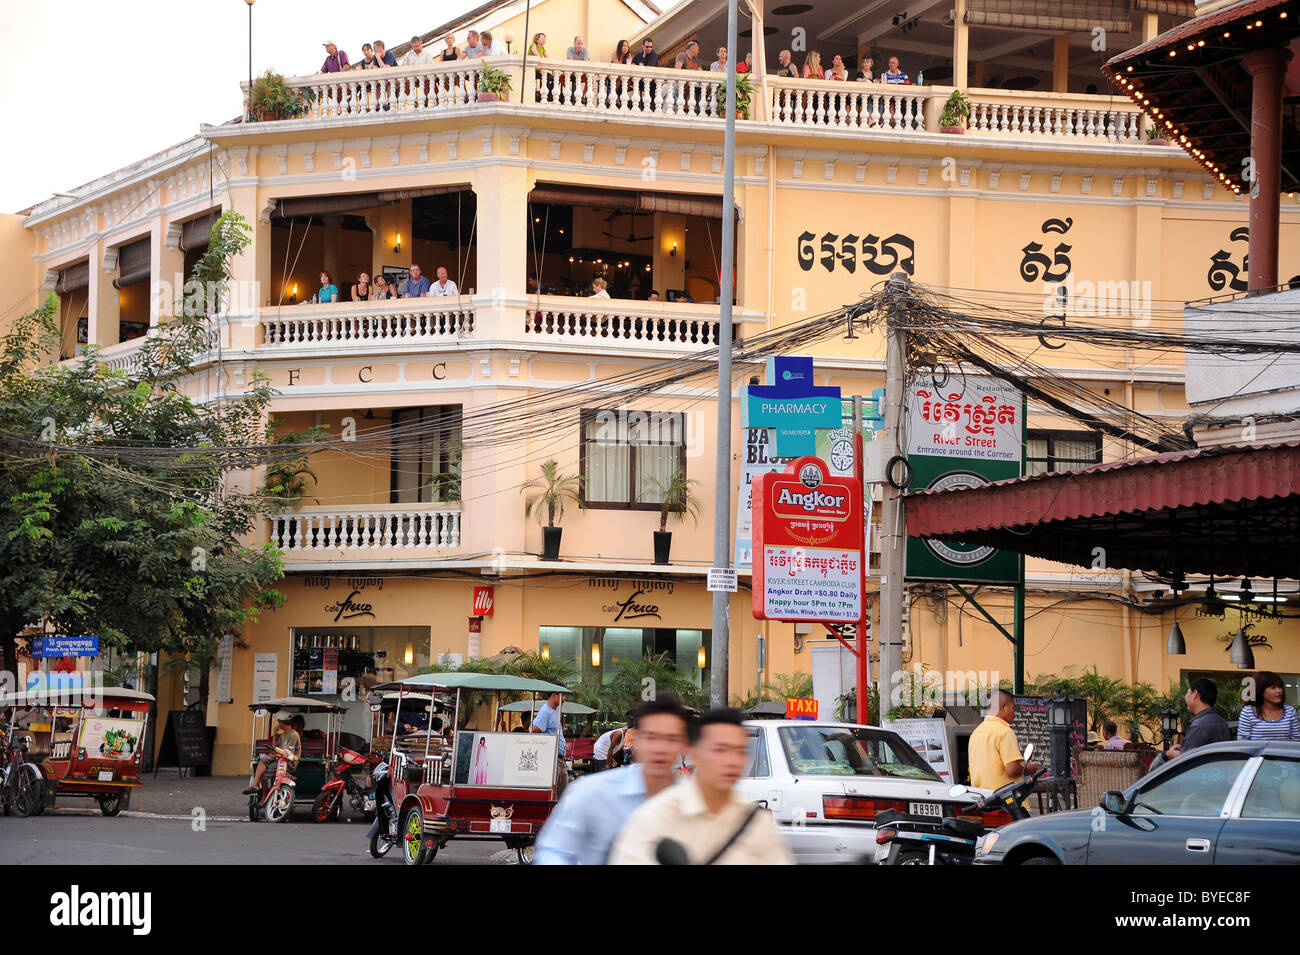 I corrispondenti stranieri' Club (FCC) era coloniale gem con fantastiche vedute del fiume Tonle Sap in Phnom Penh Cambogia. Foto Stock